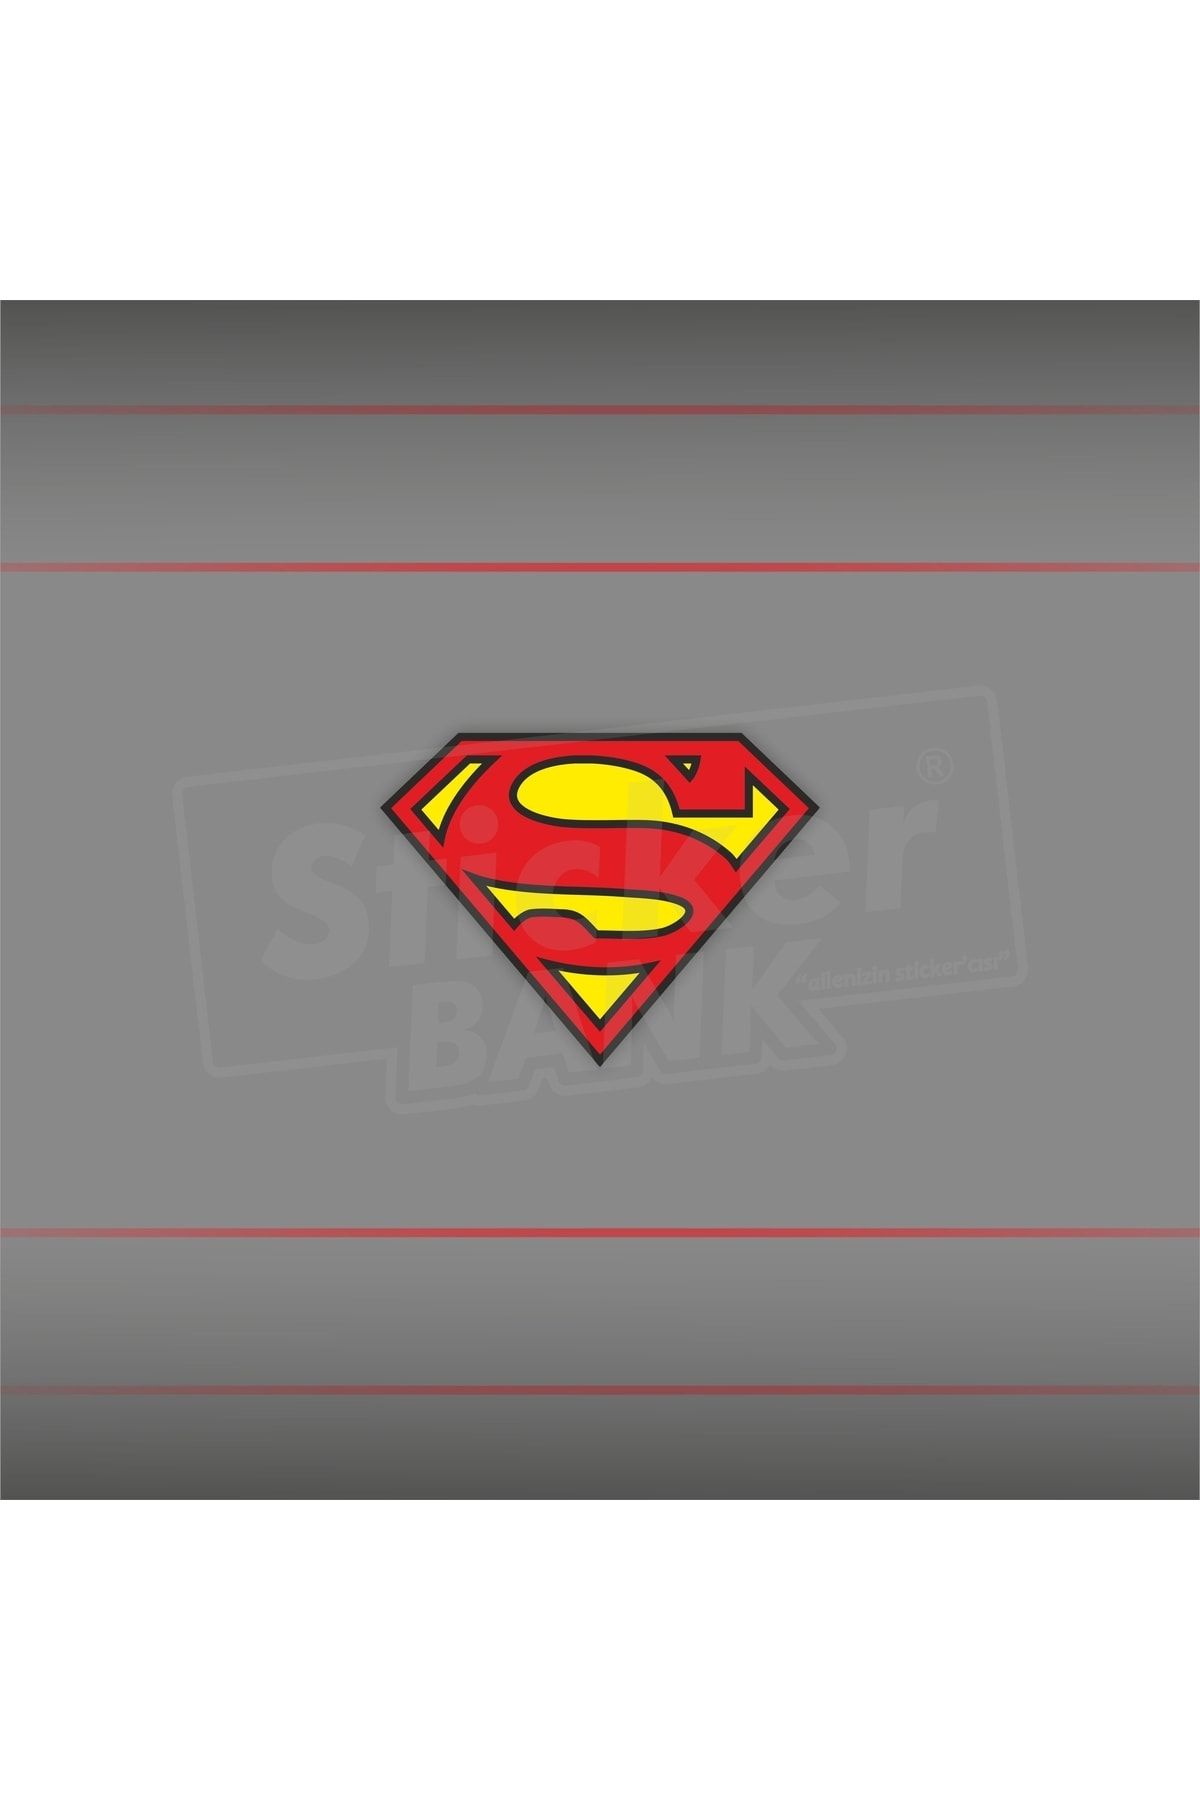 Sticker Bank Araba Sticker Süpermen Sticker